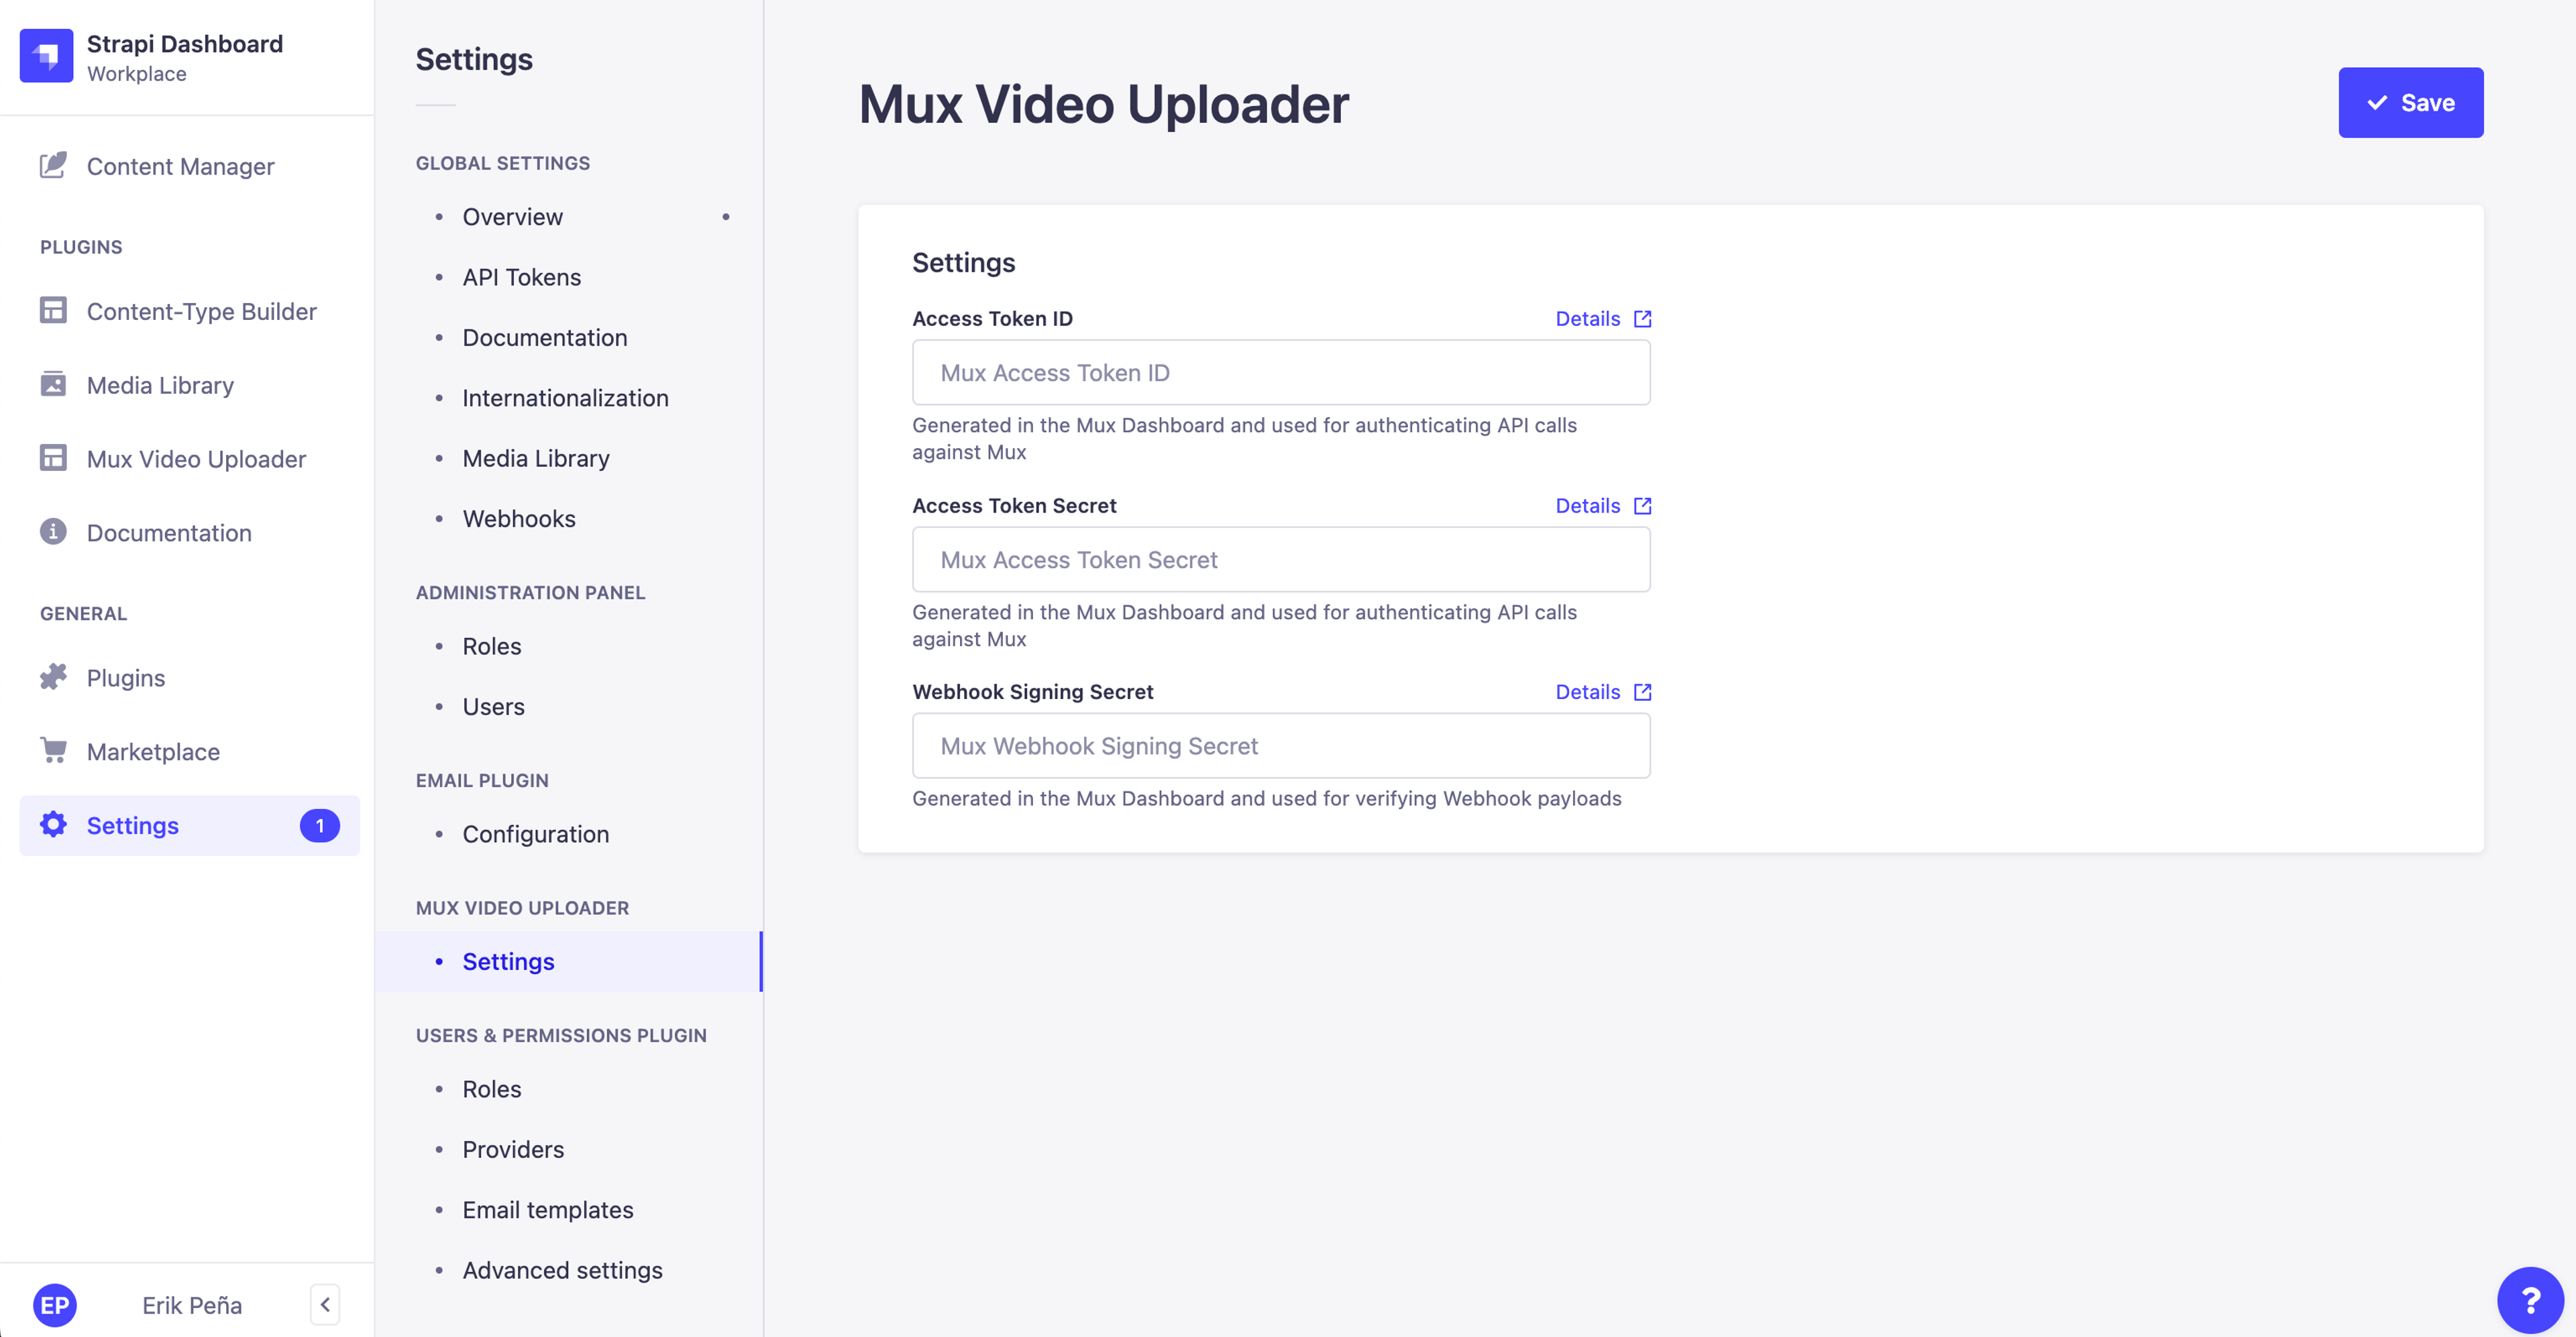 Mux Video Uploader - Settings